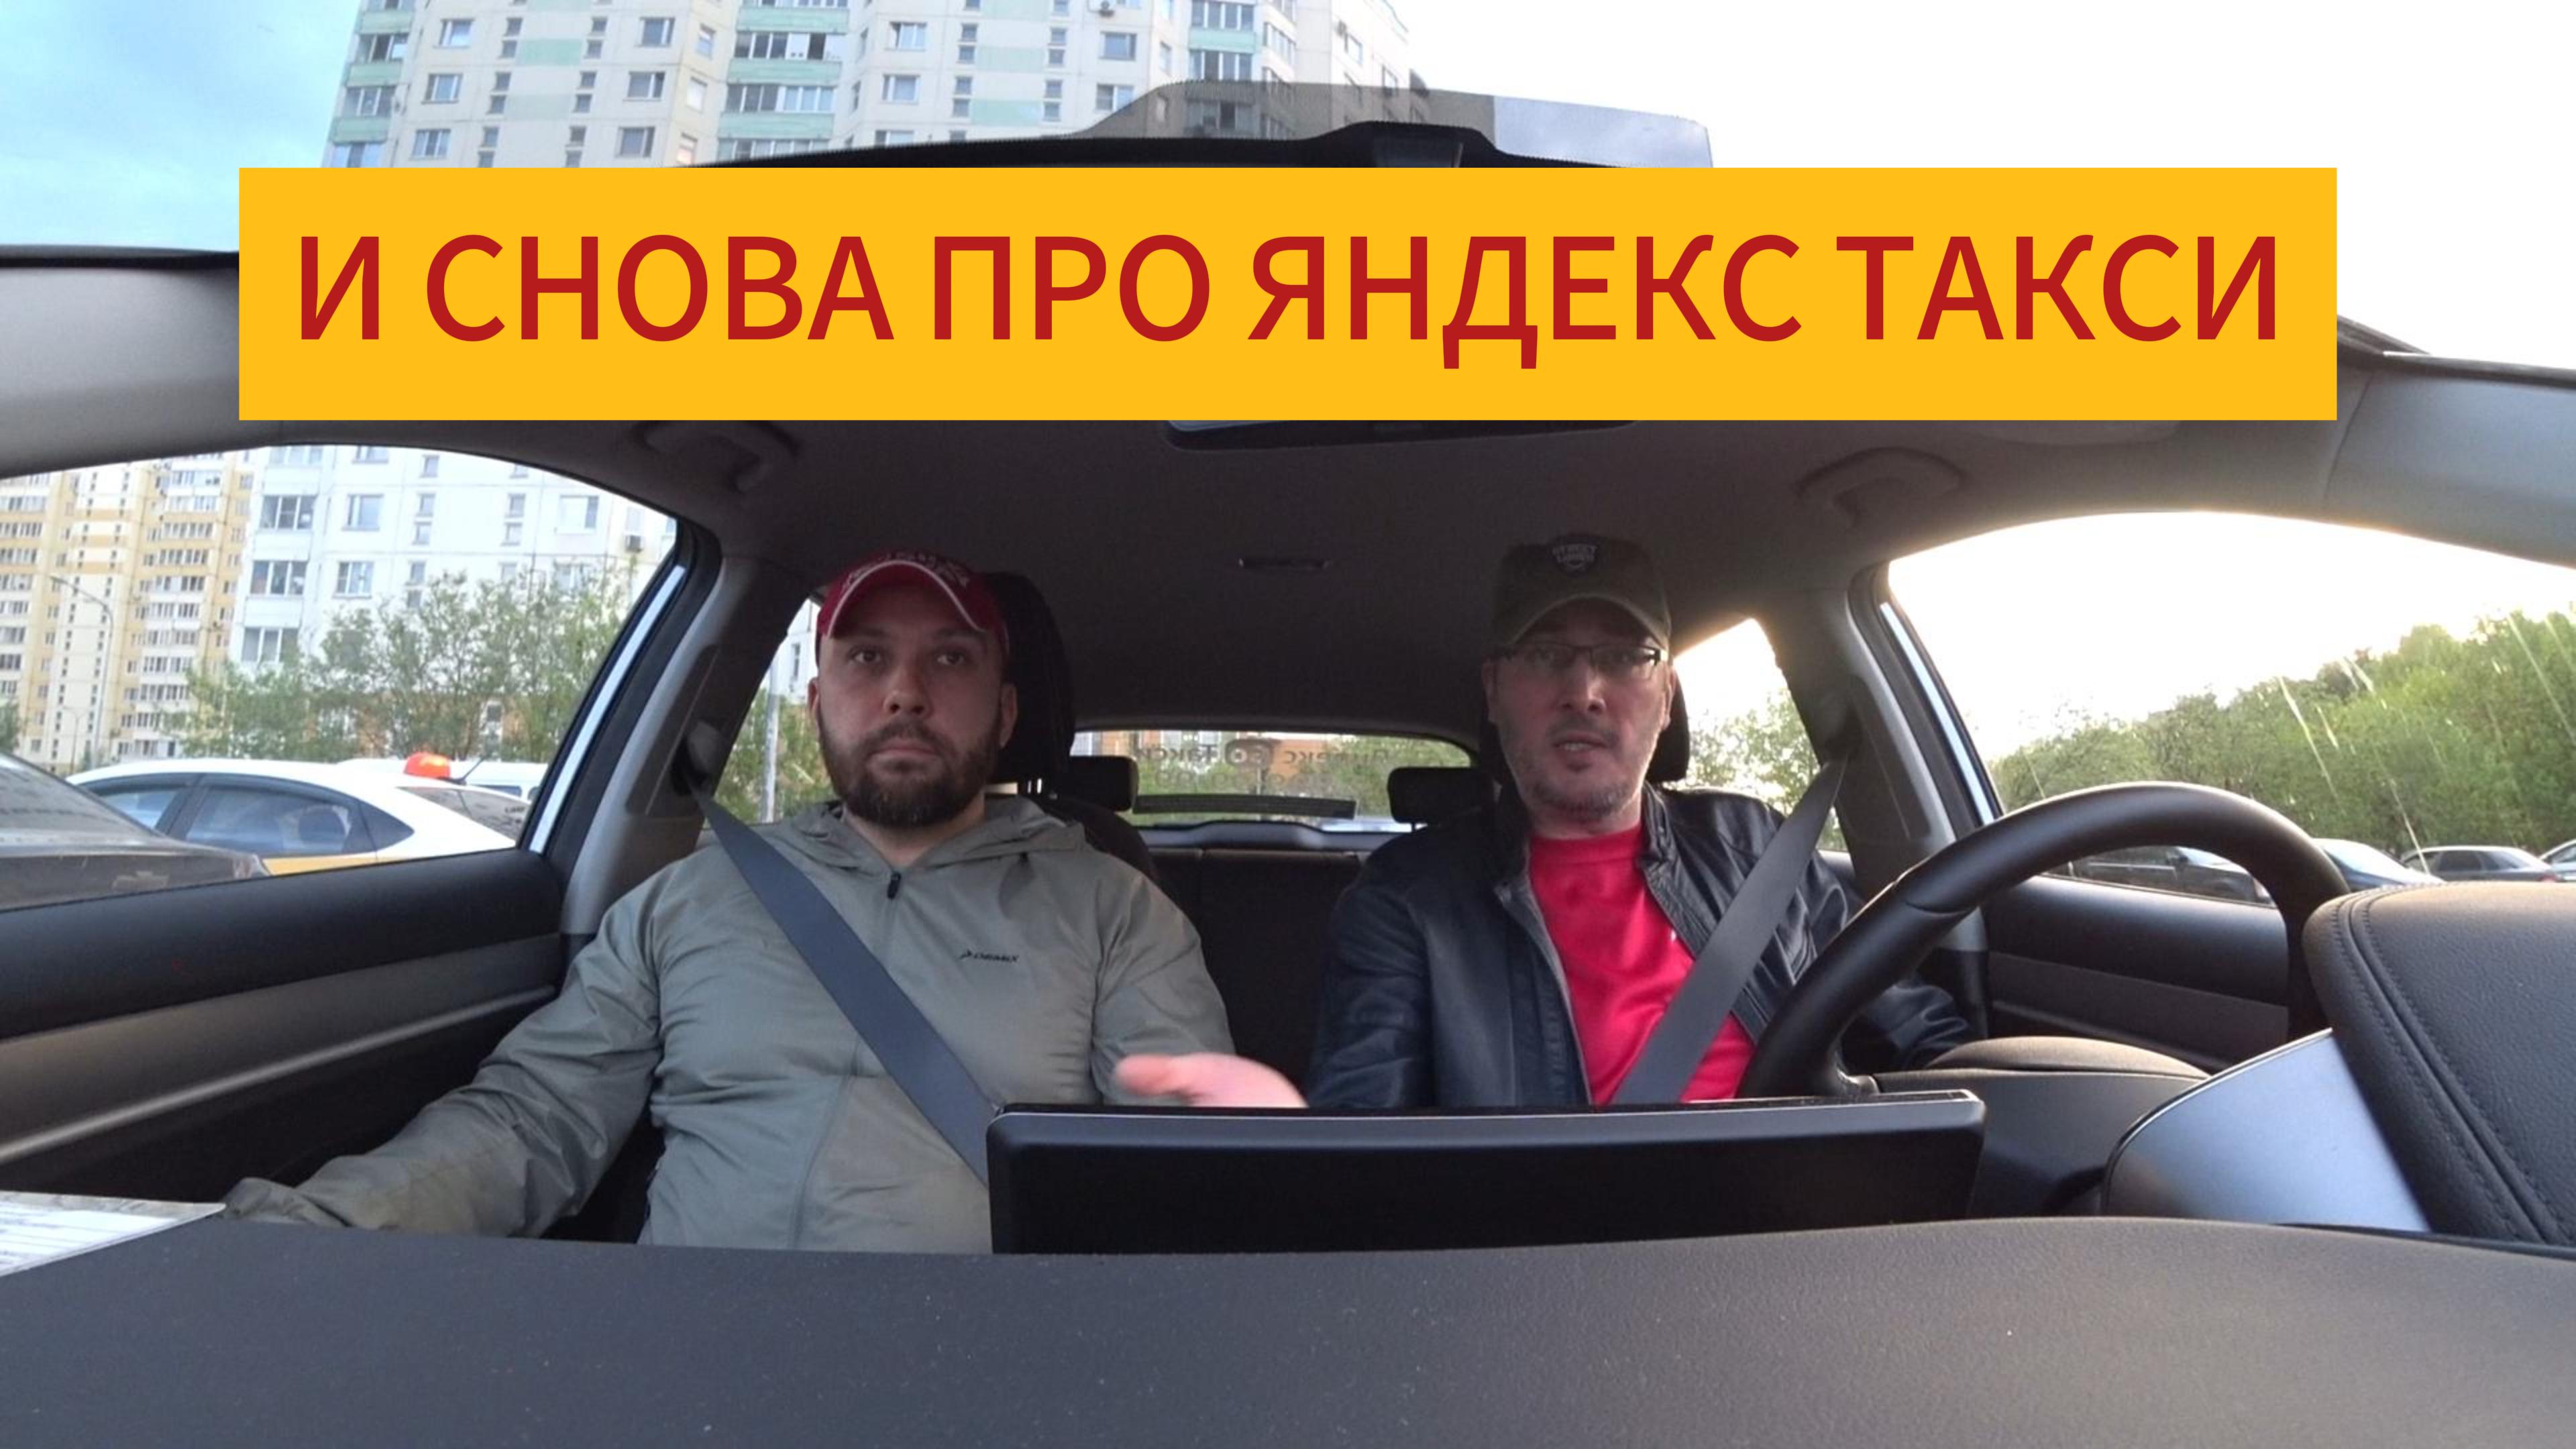 Почему таксисты постоянно жалуются на Яндекс, но работают | Разговор с непрофессиональной поддержкой